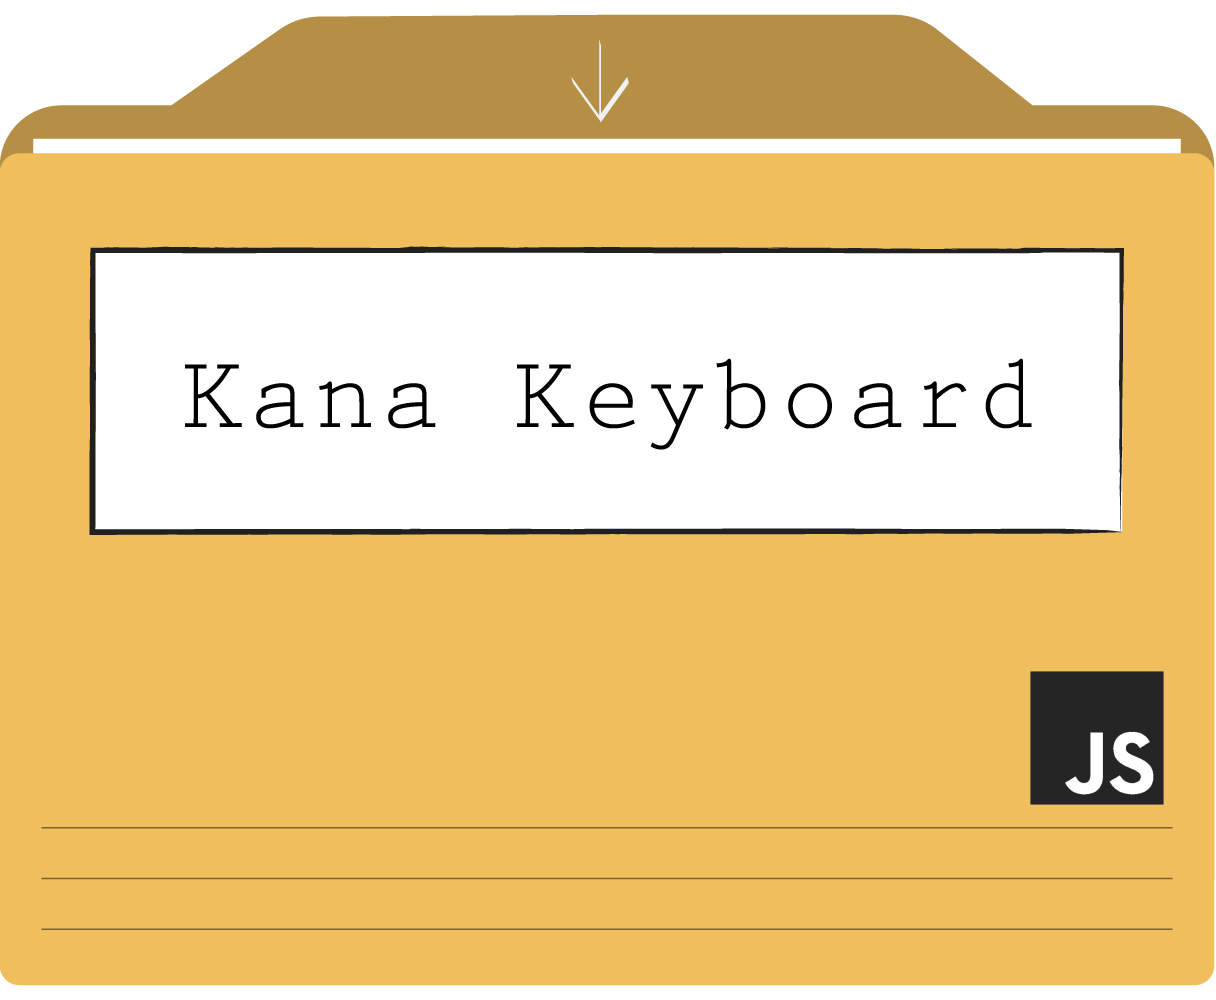 Kana Keyboard project folder